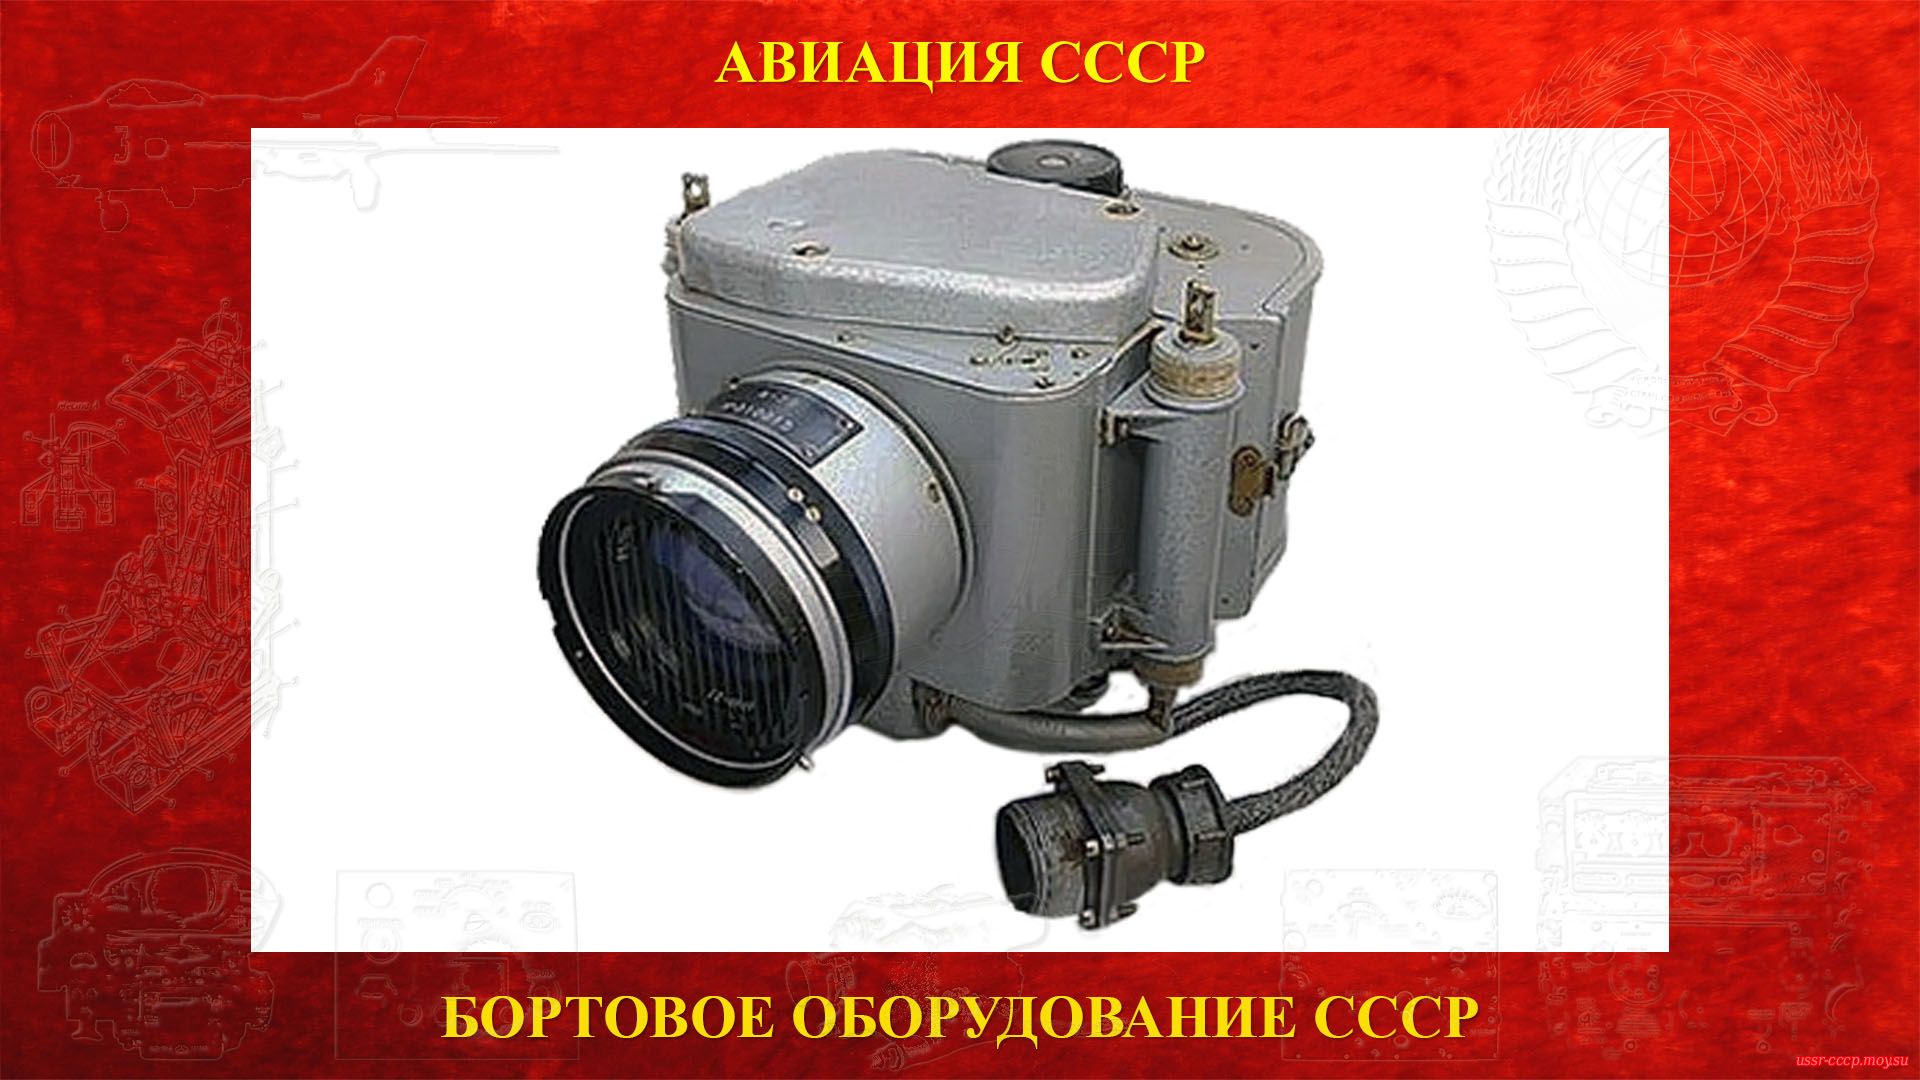 АФА-39 — Фотоаппарат дневного воздушного фотографирования